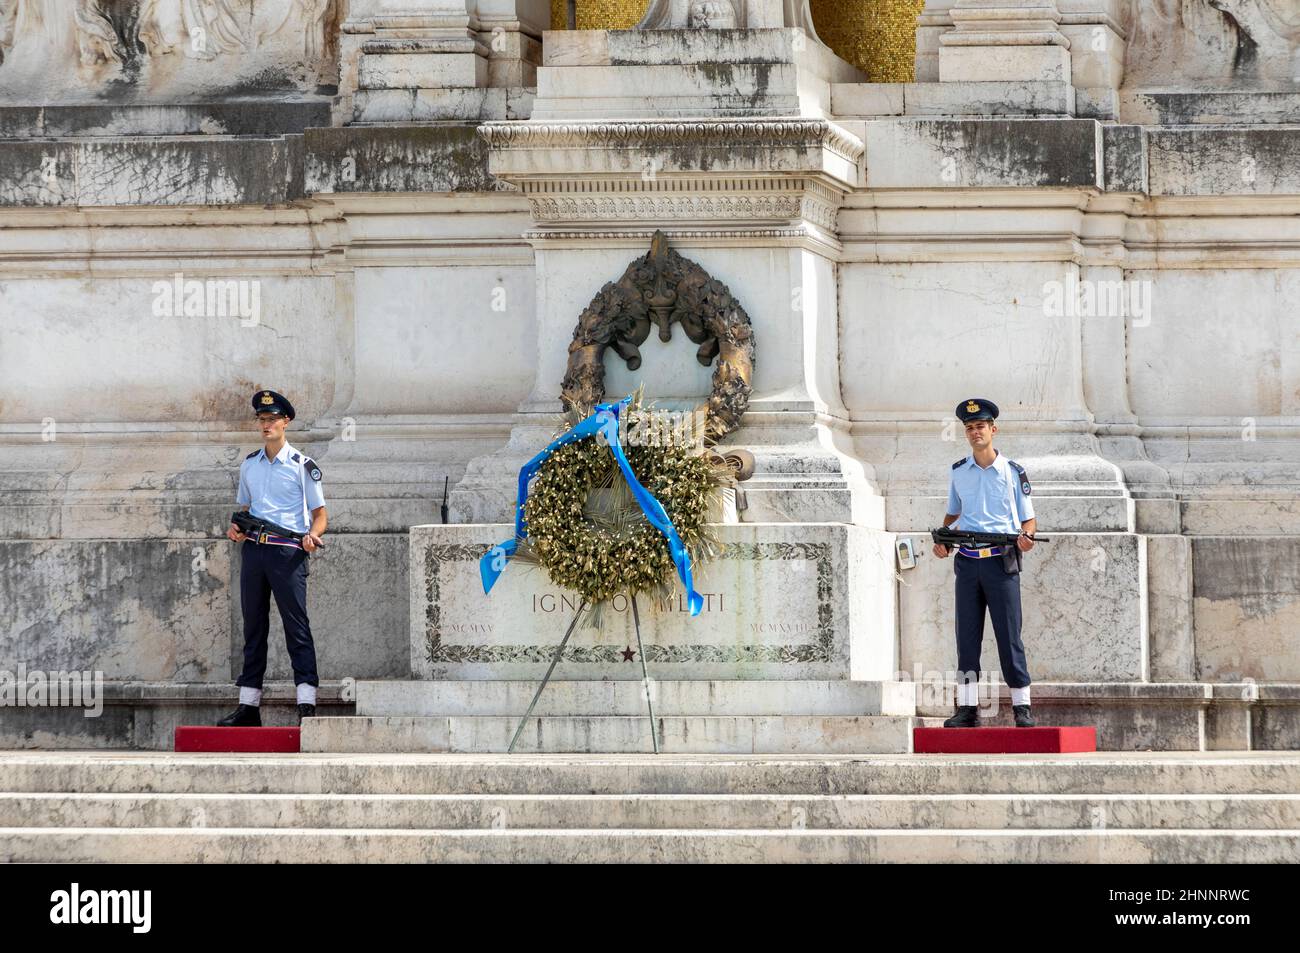 Soldaten am historischen Denkmal von Viktor Emmanuel II, Monumento Nazionale a Vittorio Emanuele II, auf dem venezianischen Platz. Grab des unbekannten Soldaten. Stockfoto